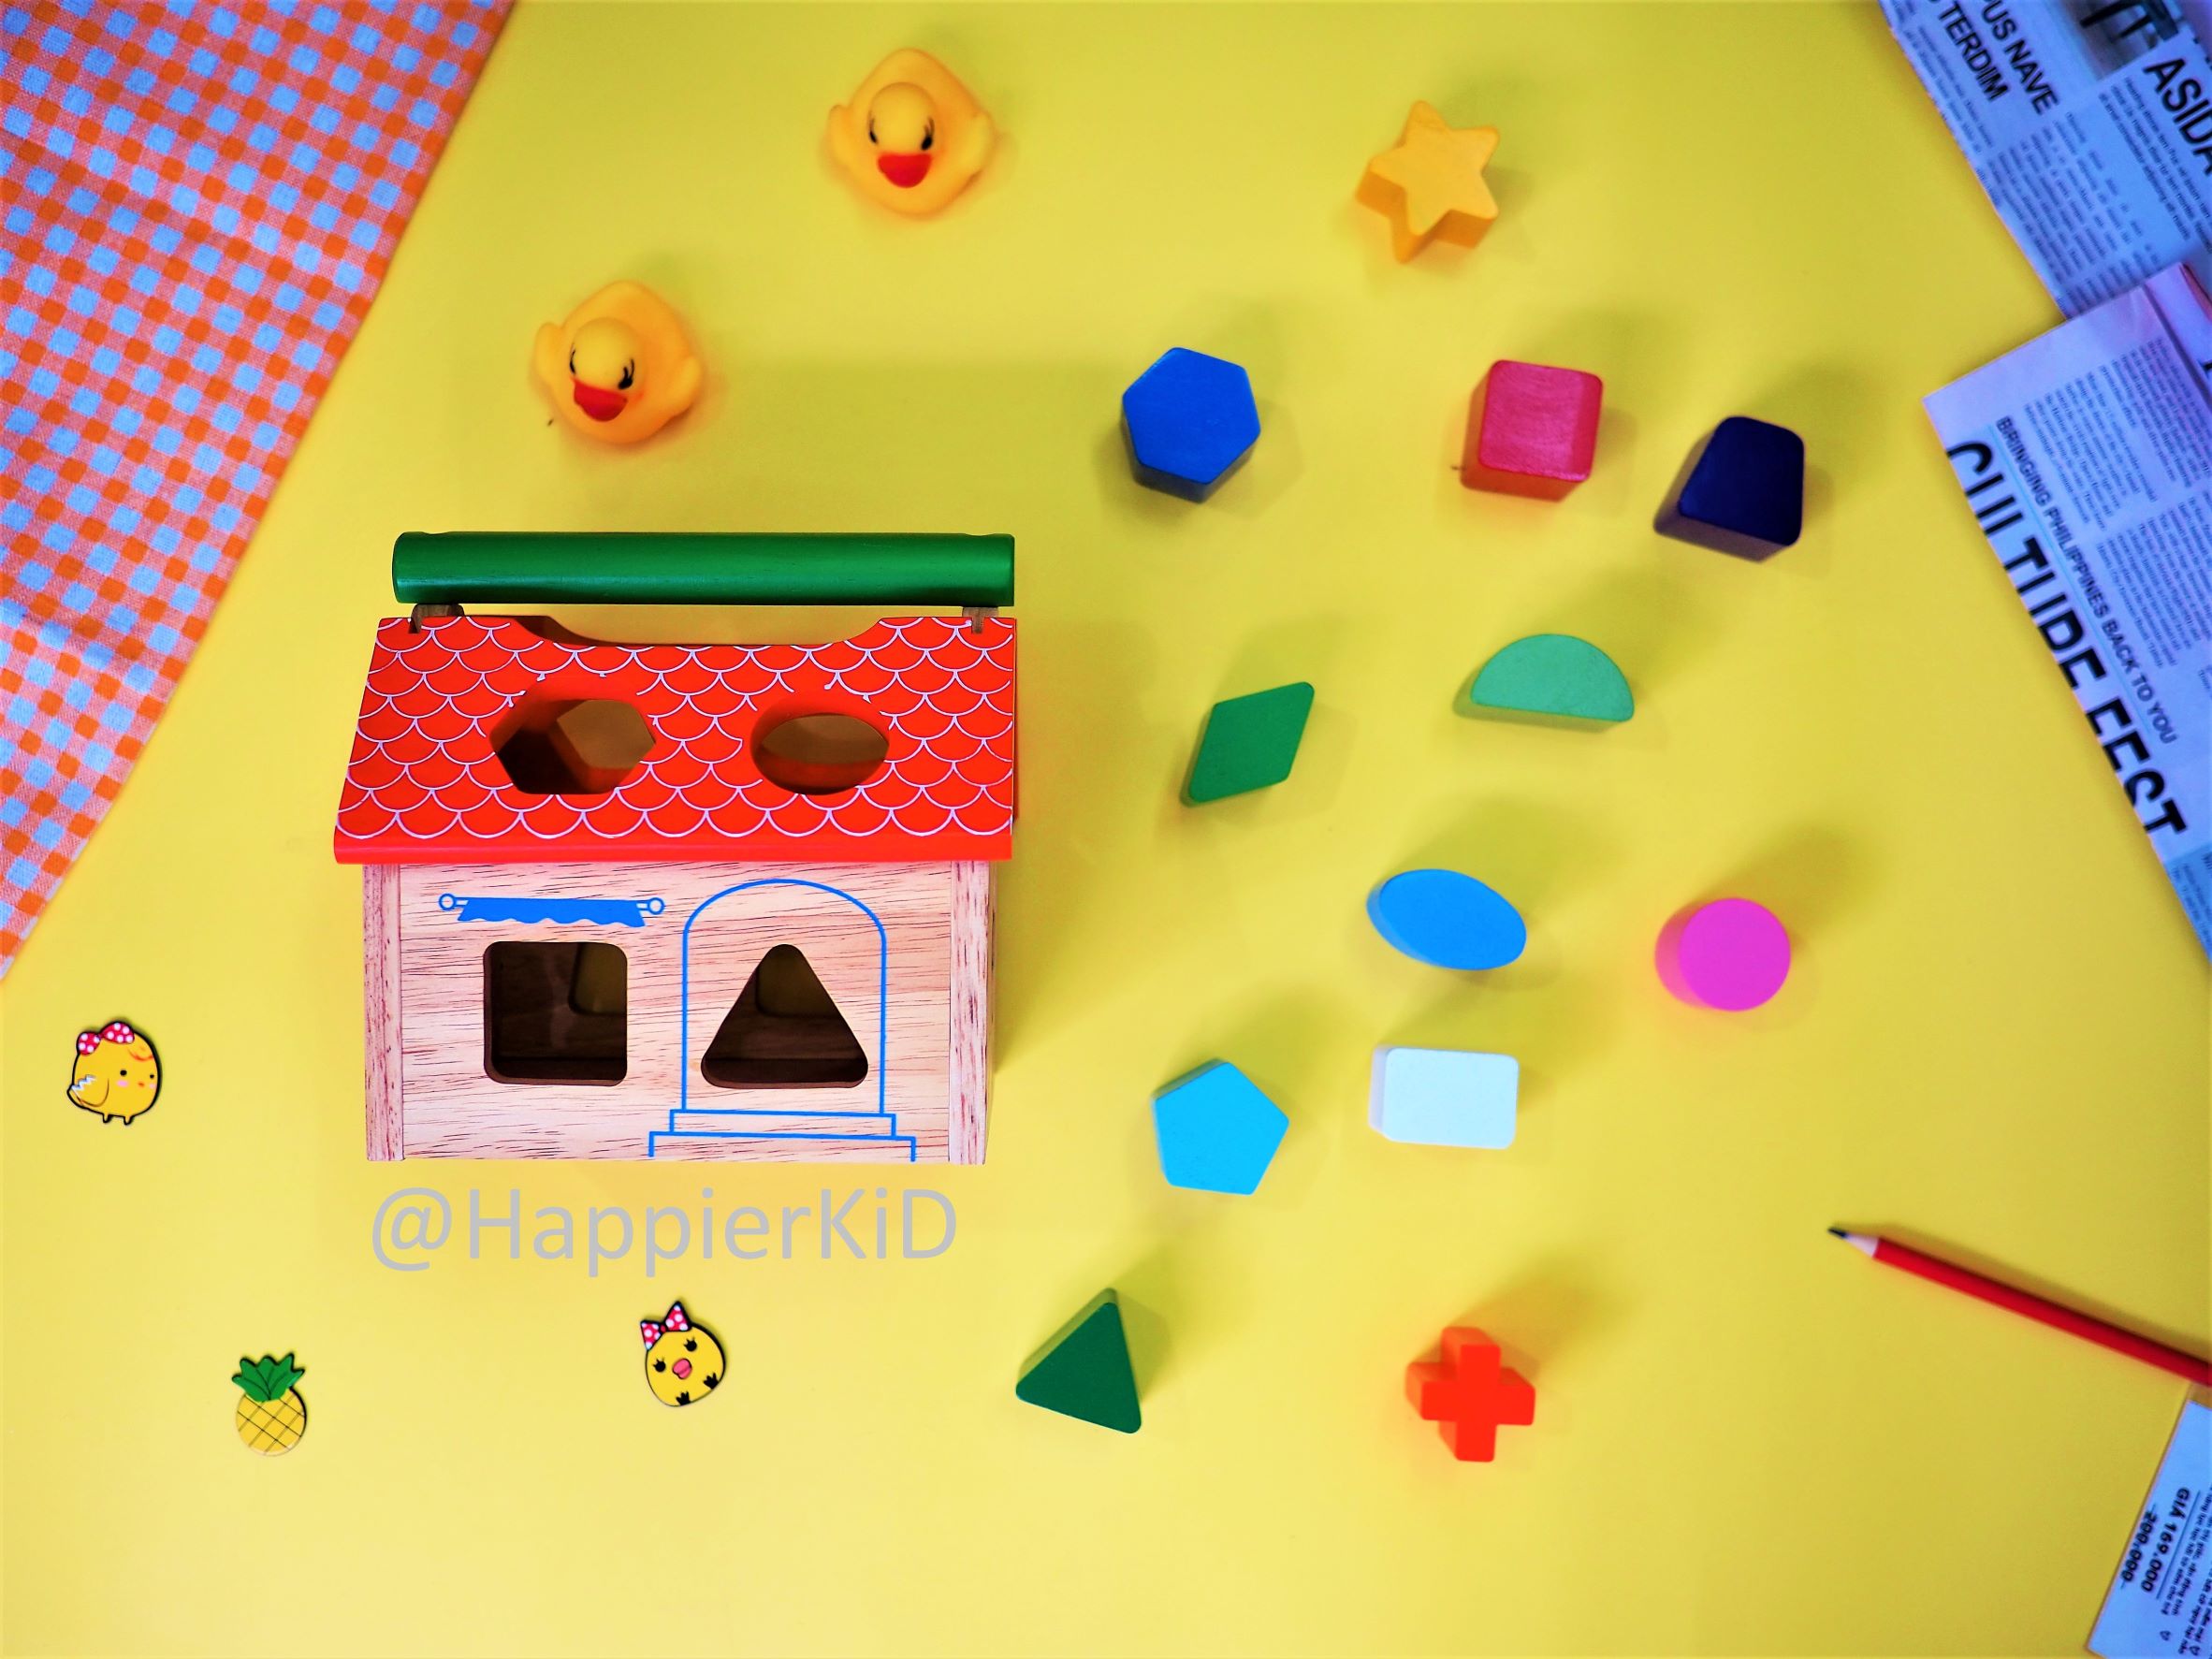 Nhà thả 12 khối Winwintoys - Đồ chơi gỗ hình khối, phát triển tư duy toán học và không gian cho trẻ